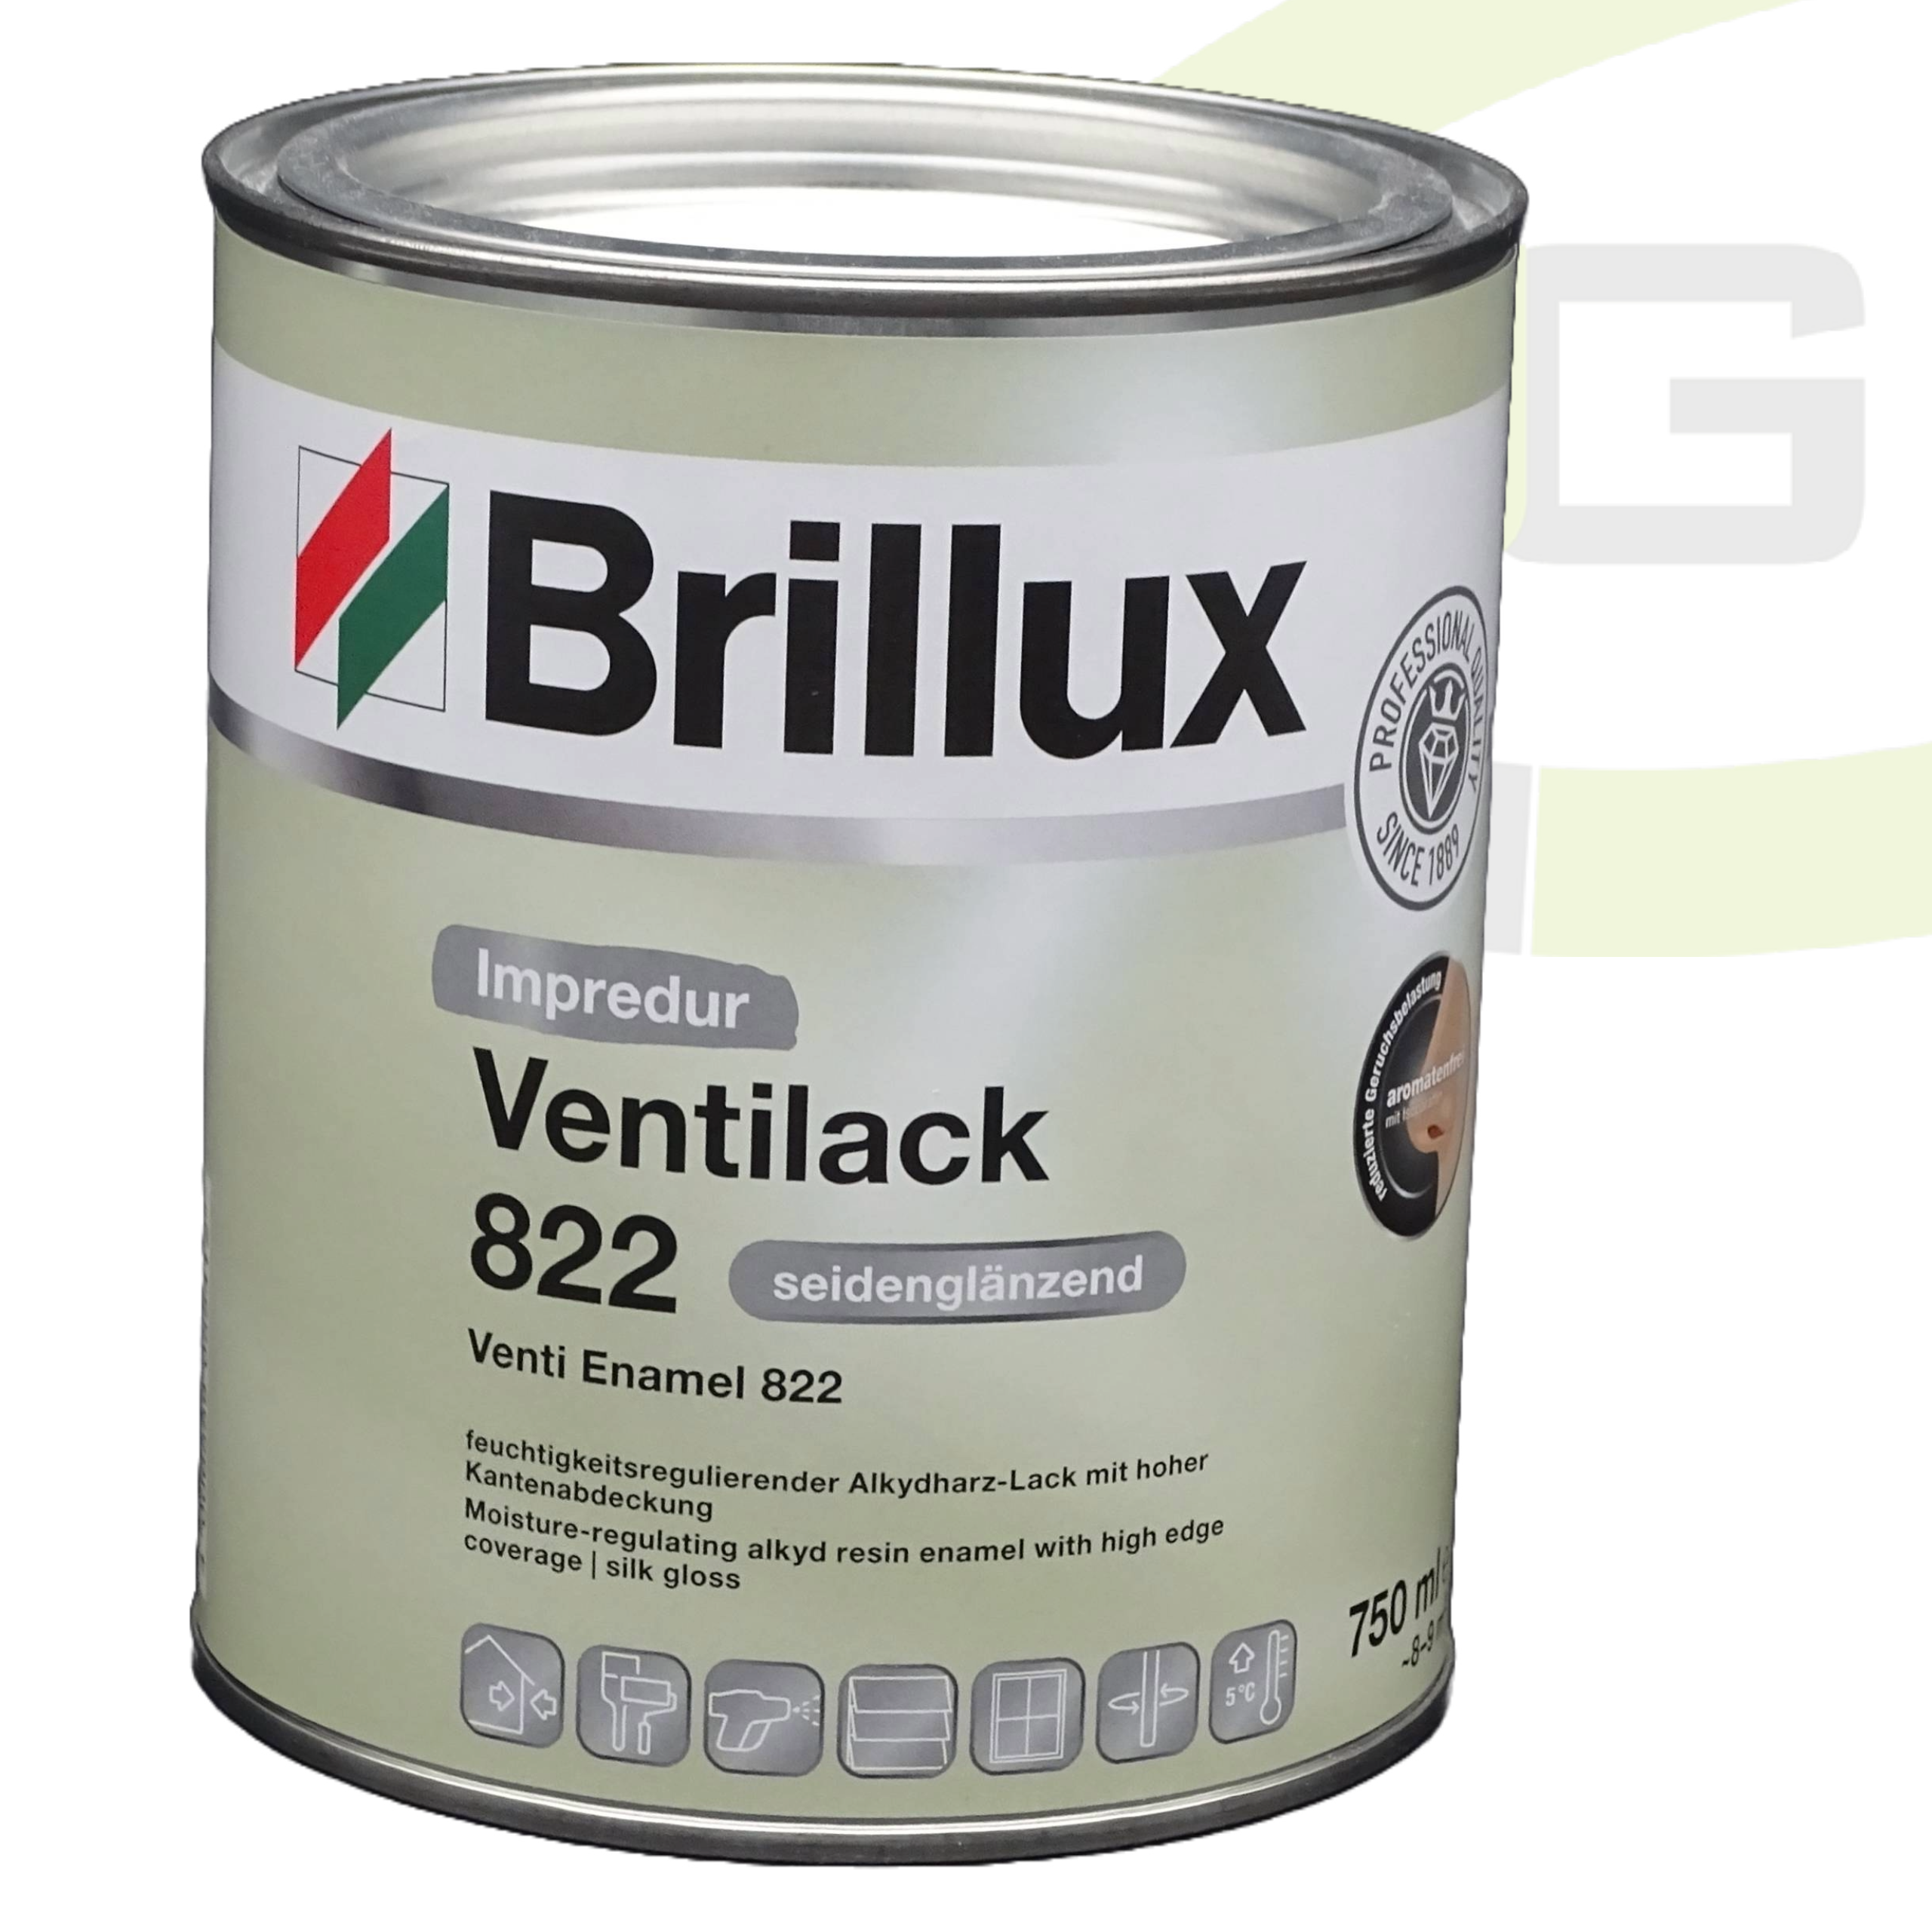 Brillux Impredur Ventilack 822 seidenglänzend - 750 ml / Fenster- und Türenlack + Grund- und Endlack